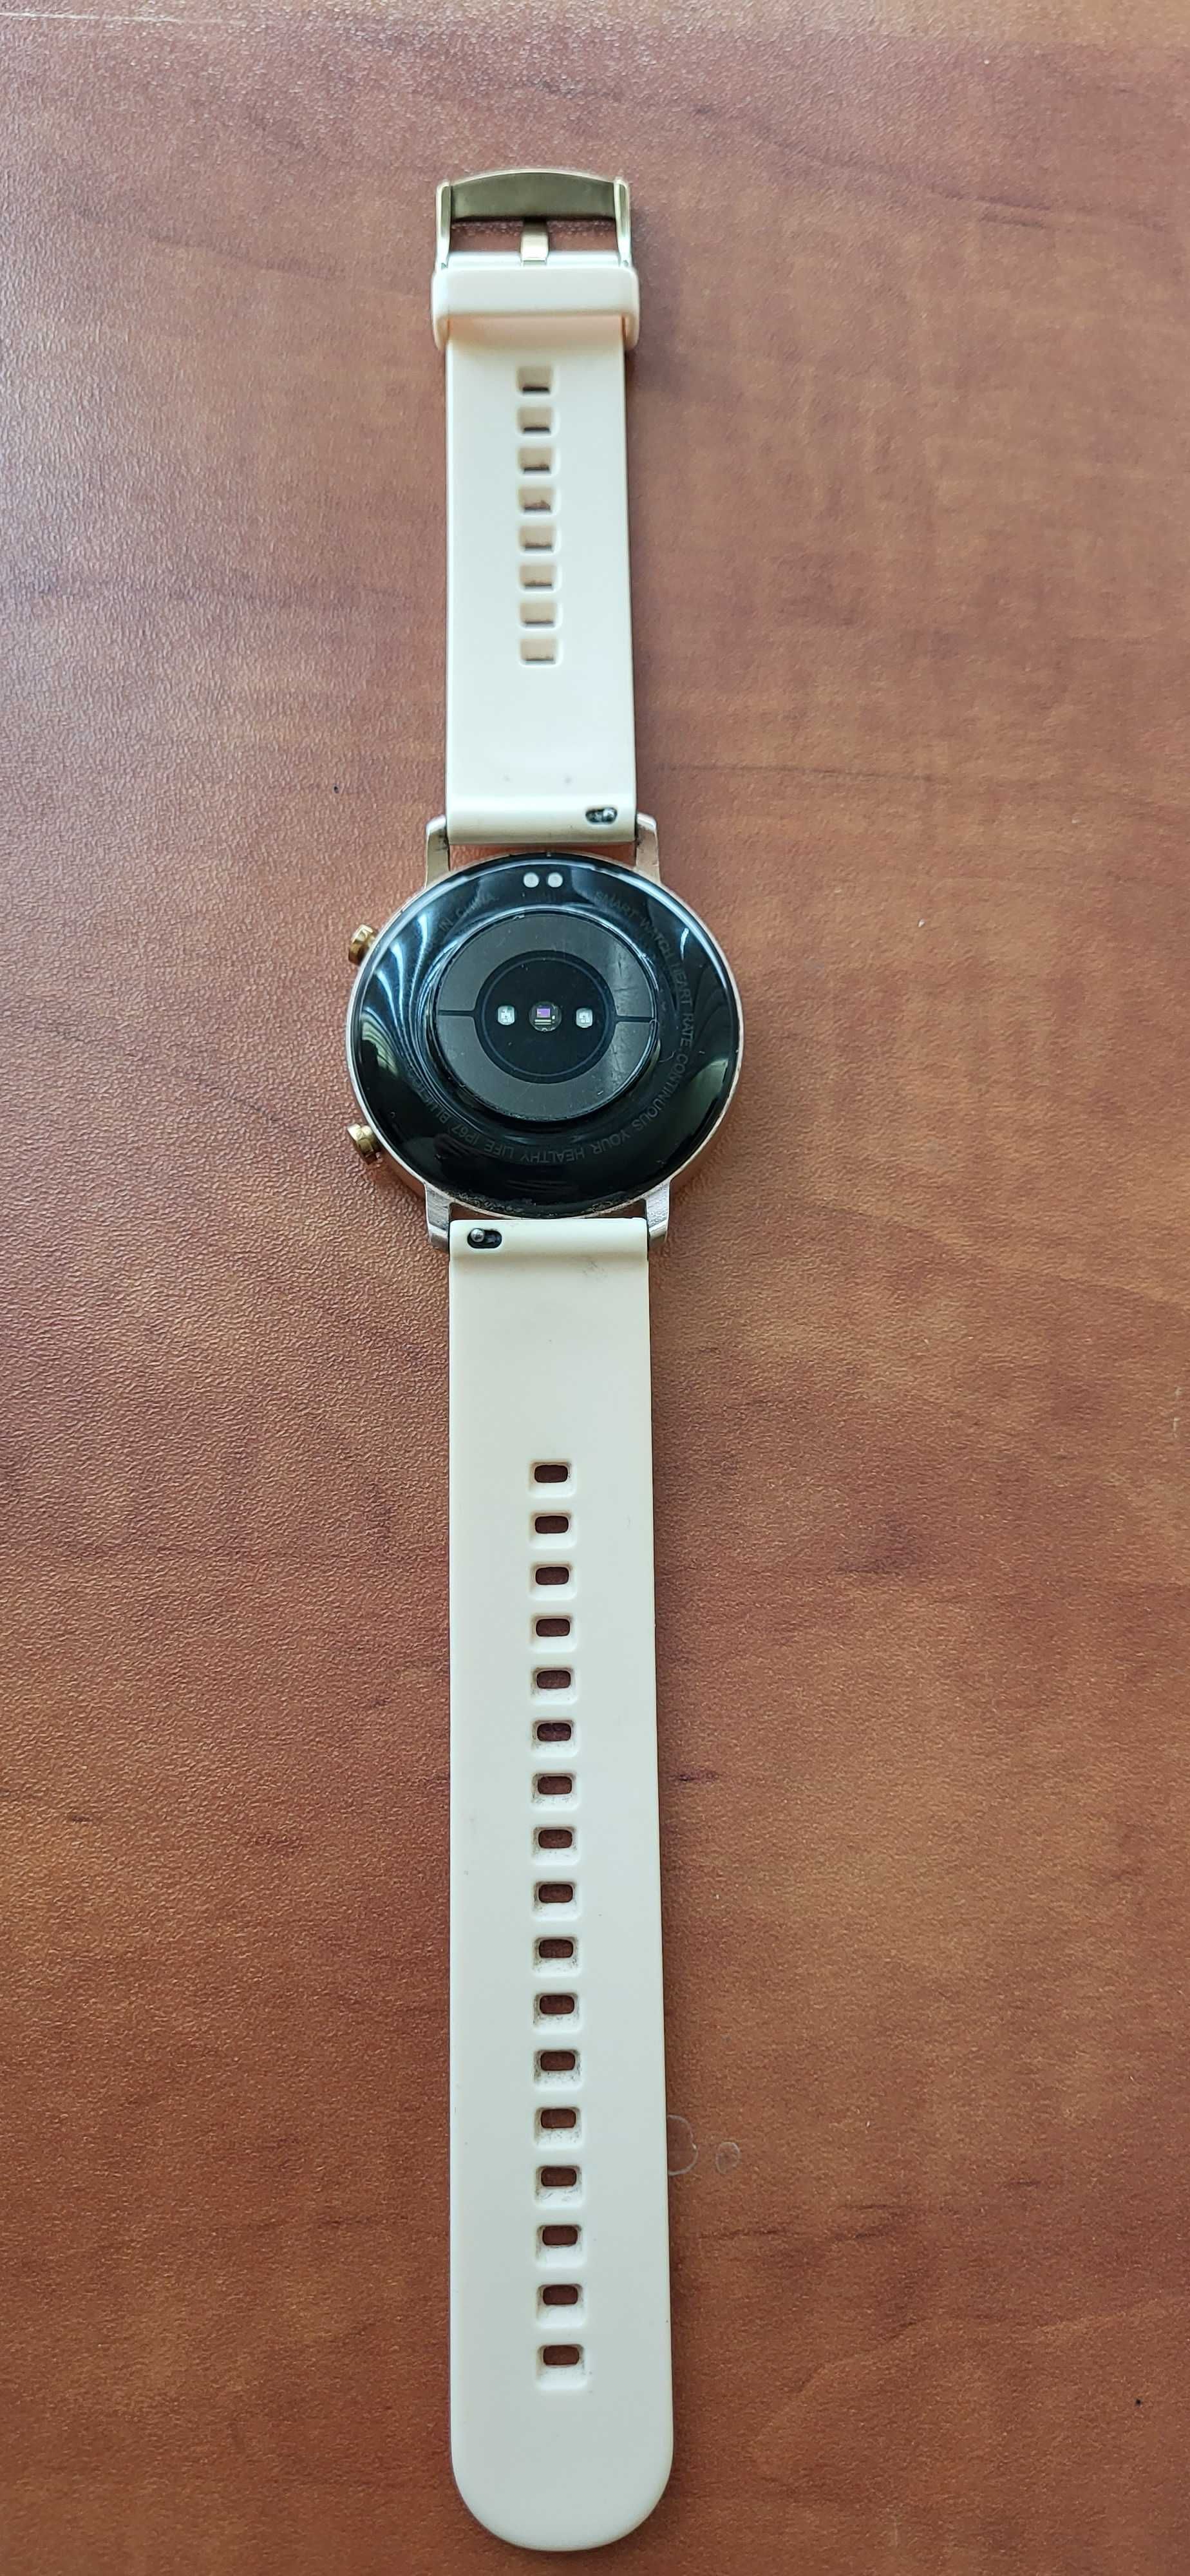 smartwatch damski (DT96) sprawny z małym defektem